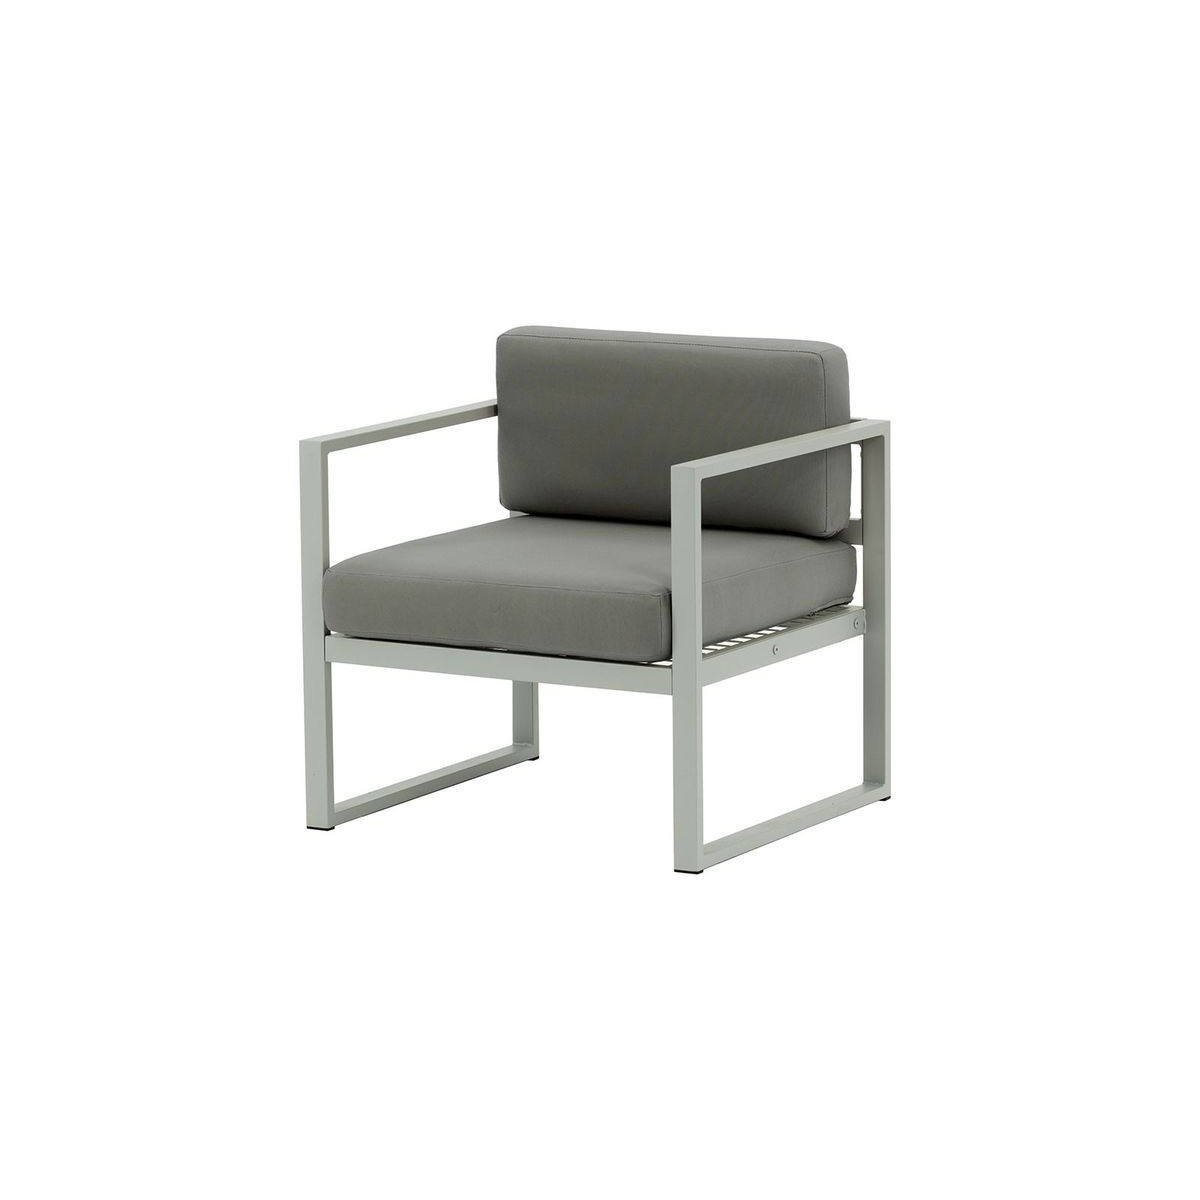 Sunset Garden Armchair, dark grey, Leg colour: grey steel - image 1